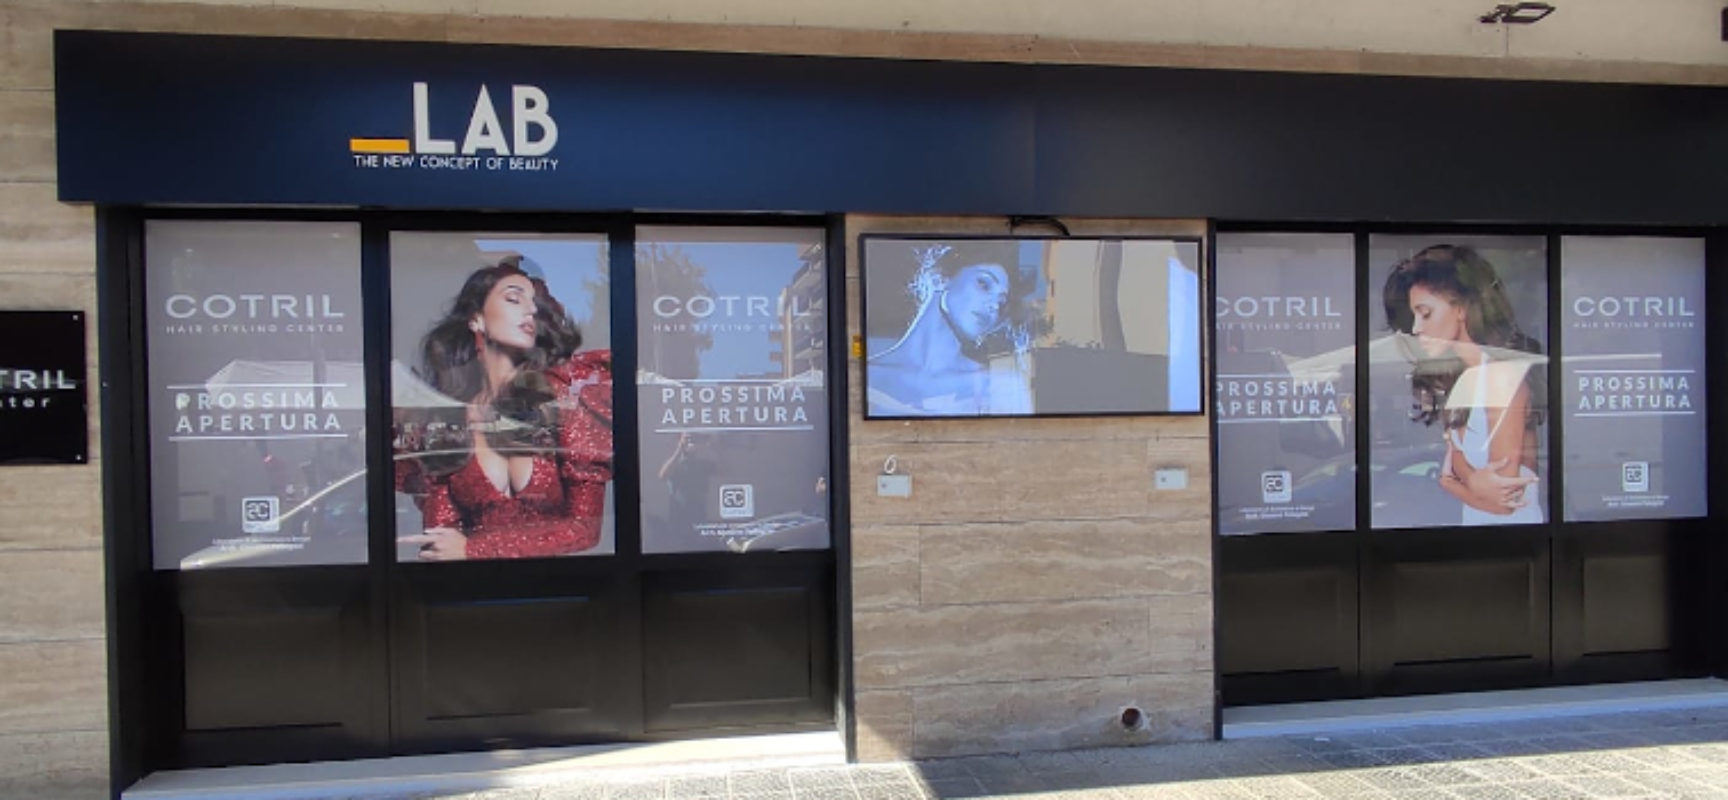 Salone hair style Lab Concept-Cotril Center, inaugurazione con special guest / DETTAGLI